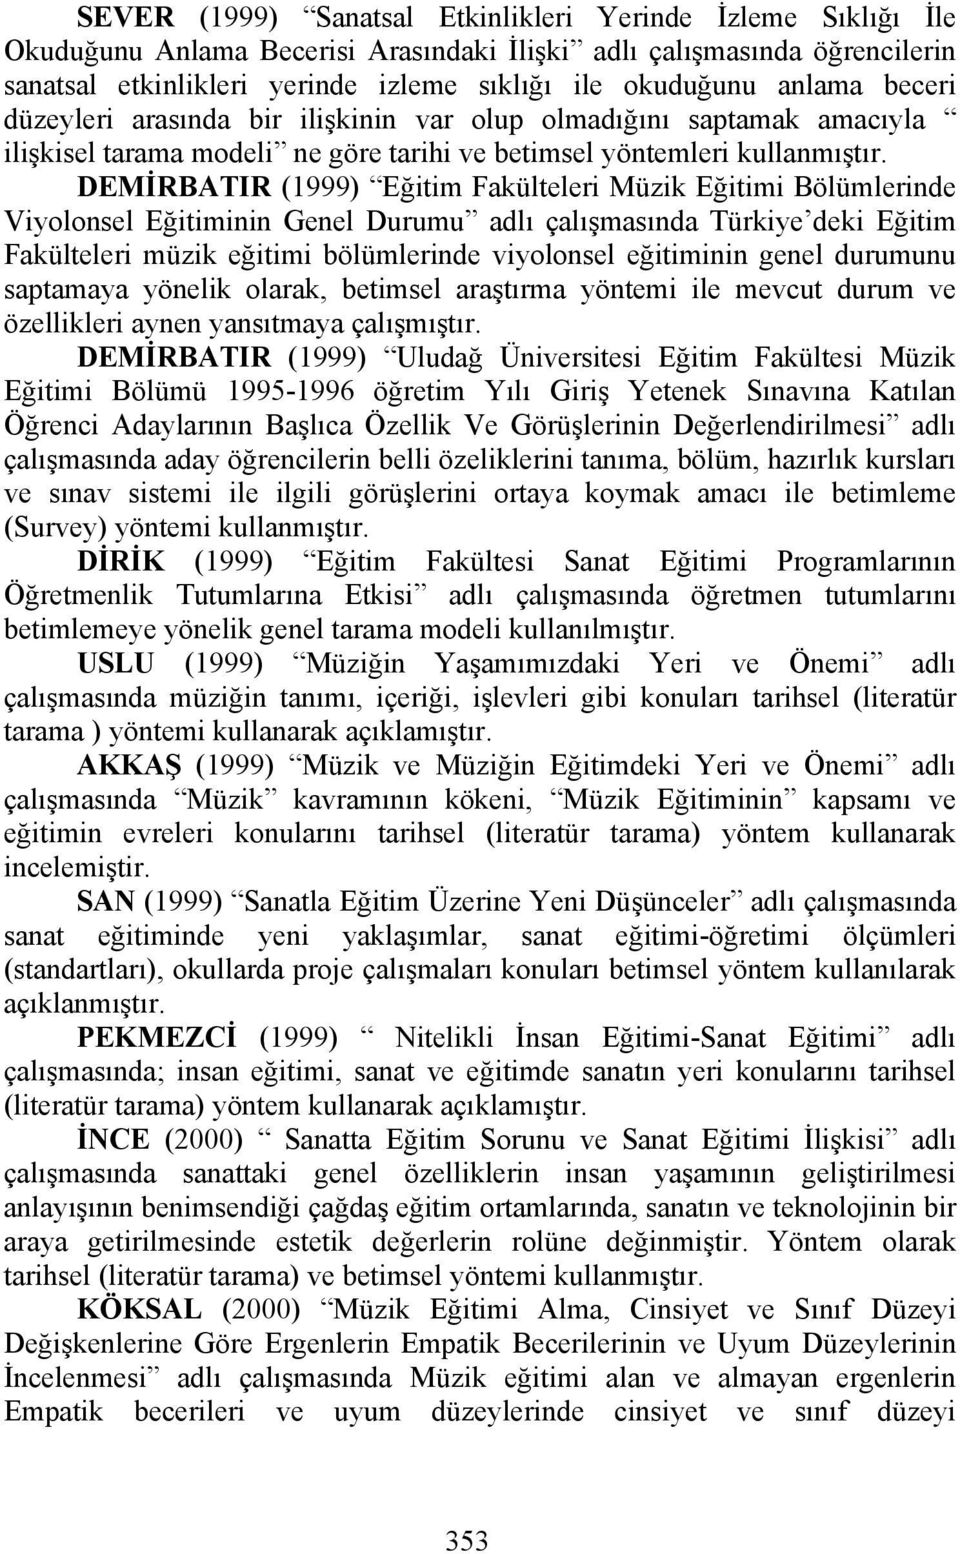 DEMİRBATIR (1999) Eğitim Fakülteleri Müzik Eğitimi Bölümlerinde Viyolonsel Eğitiminin Genel Durumu adlı çalışmasında Türkiye deki Eğitim Fakülteleri müzik eğitimi bölümlerinde viyolonsel eğitiminin